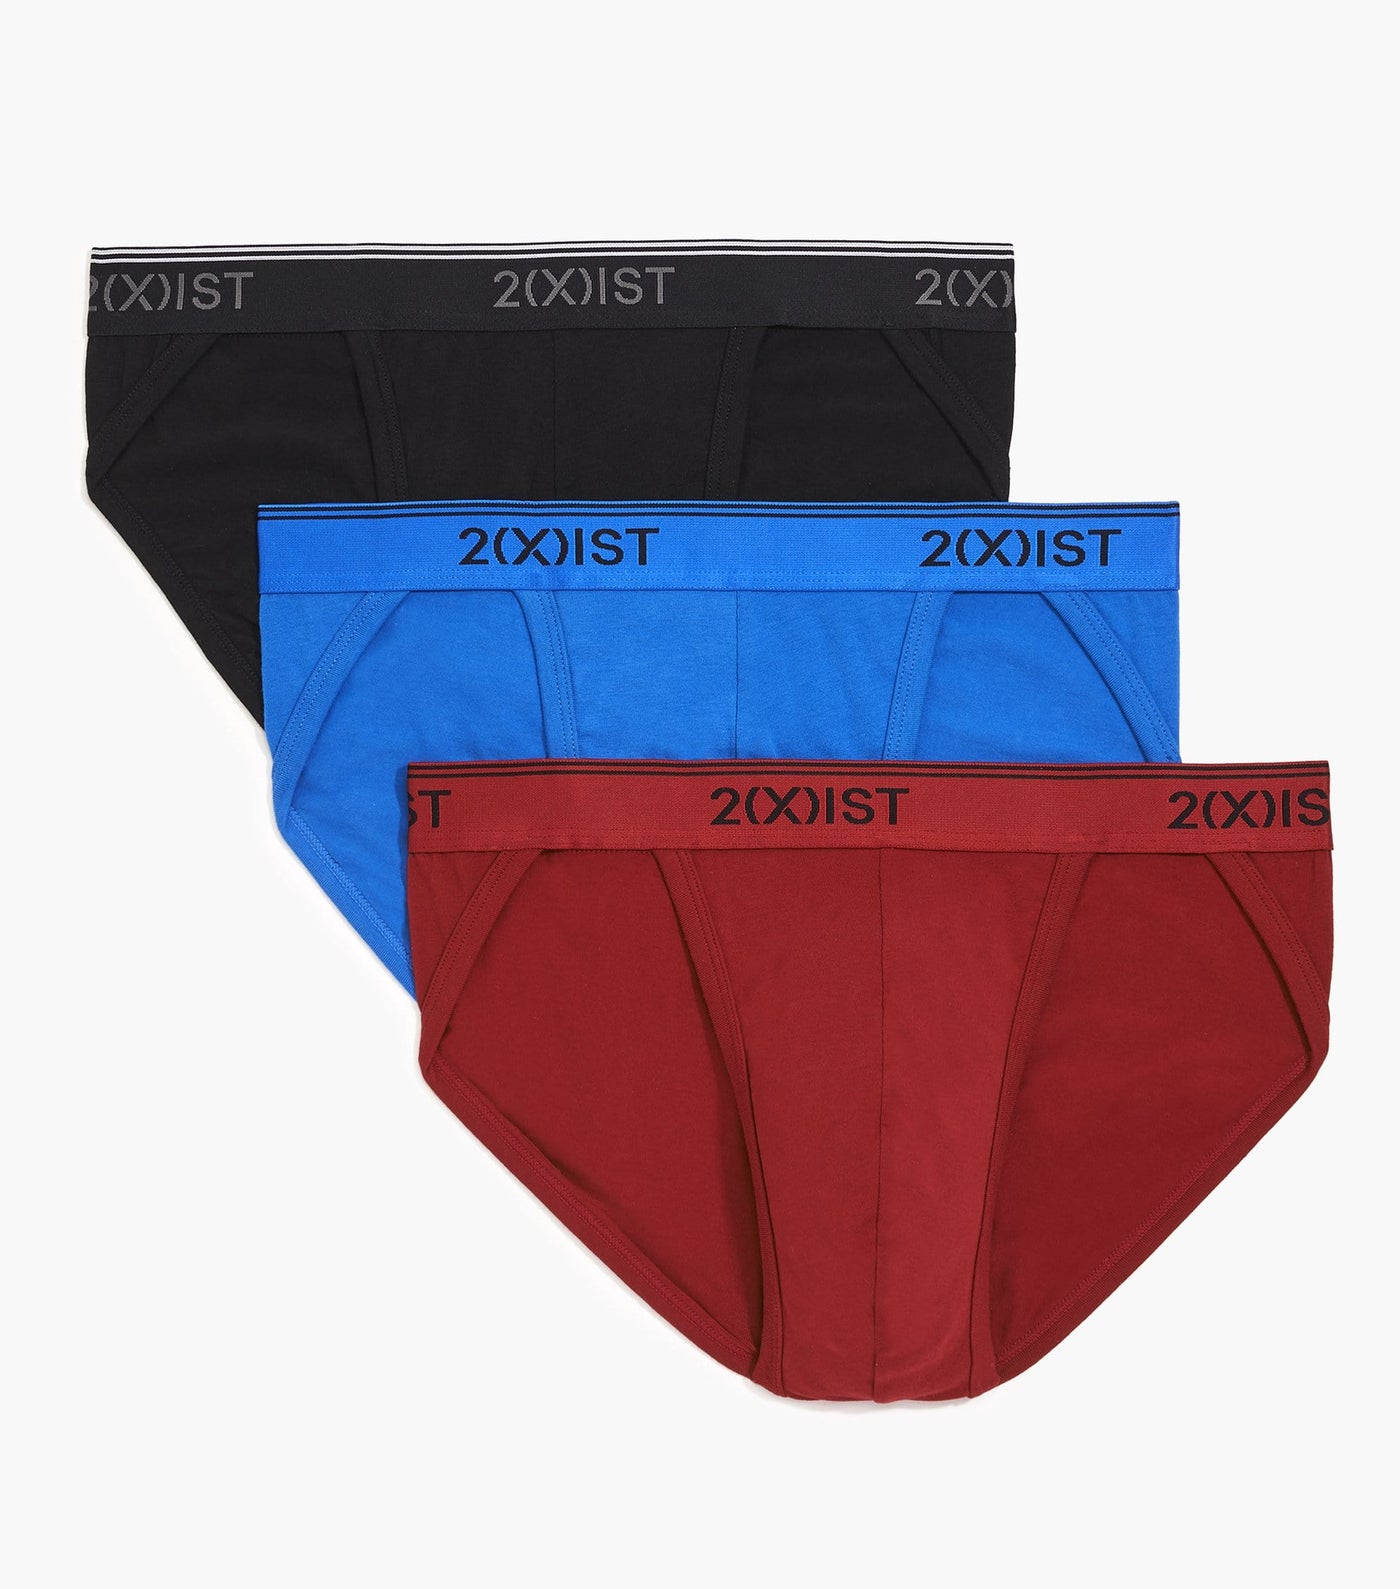 2(X)IST | Men's Underwear, Swimwear, Apparel & Accessories